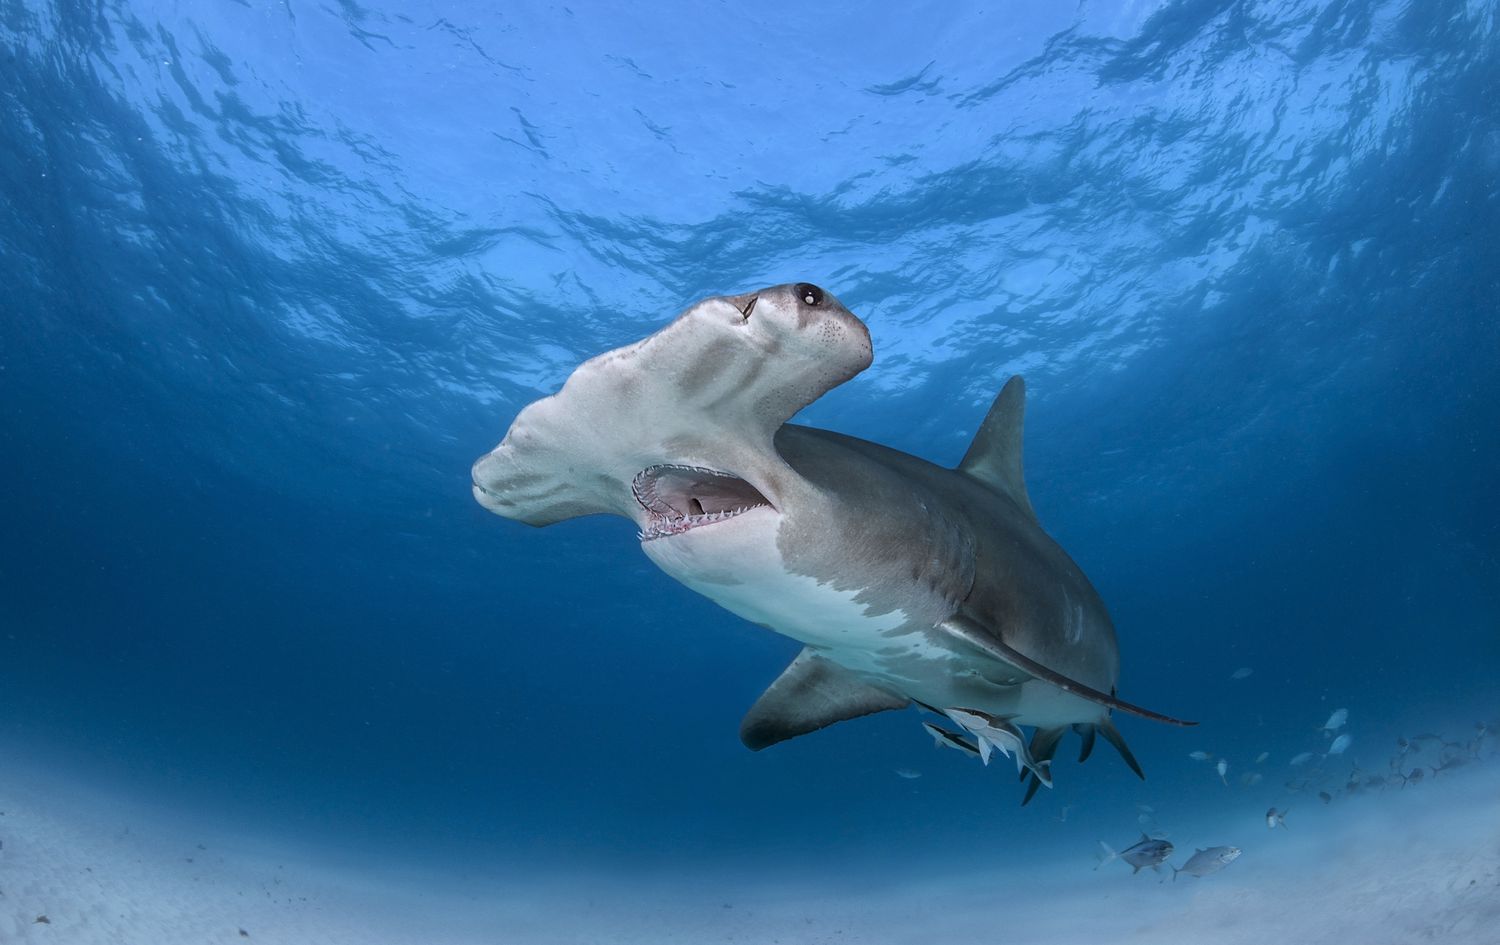 一只双髻鲨张着嘴在海面附近游泳。